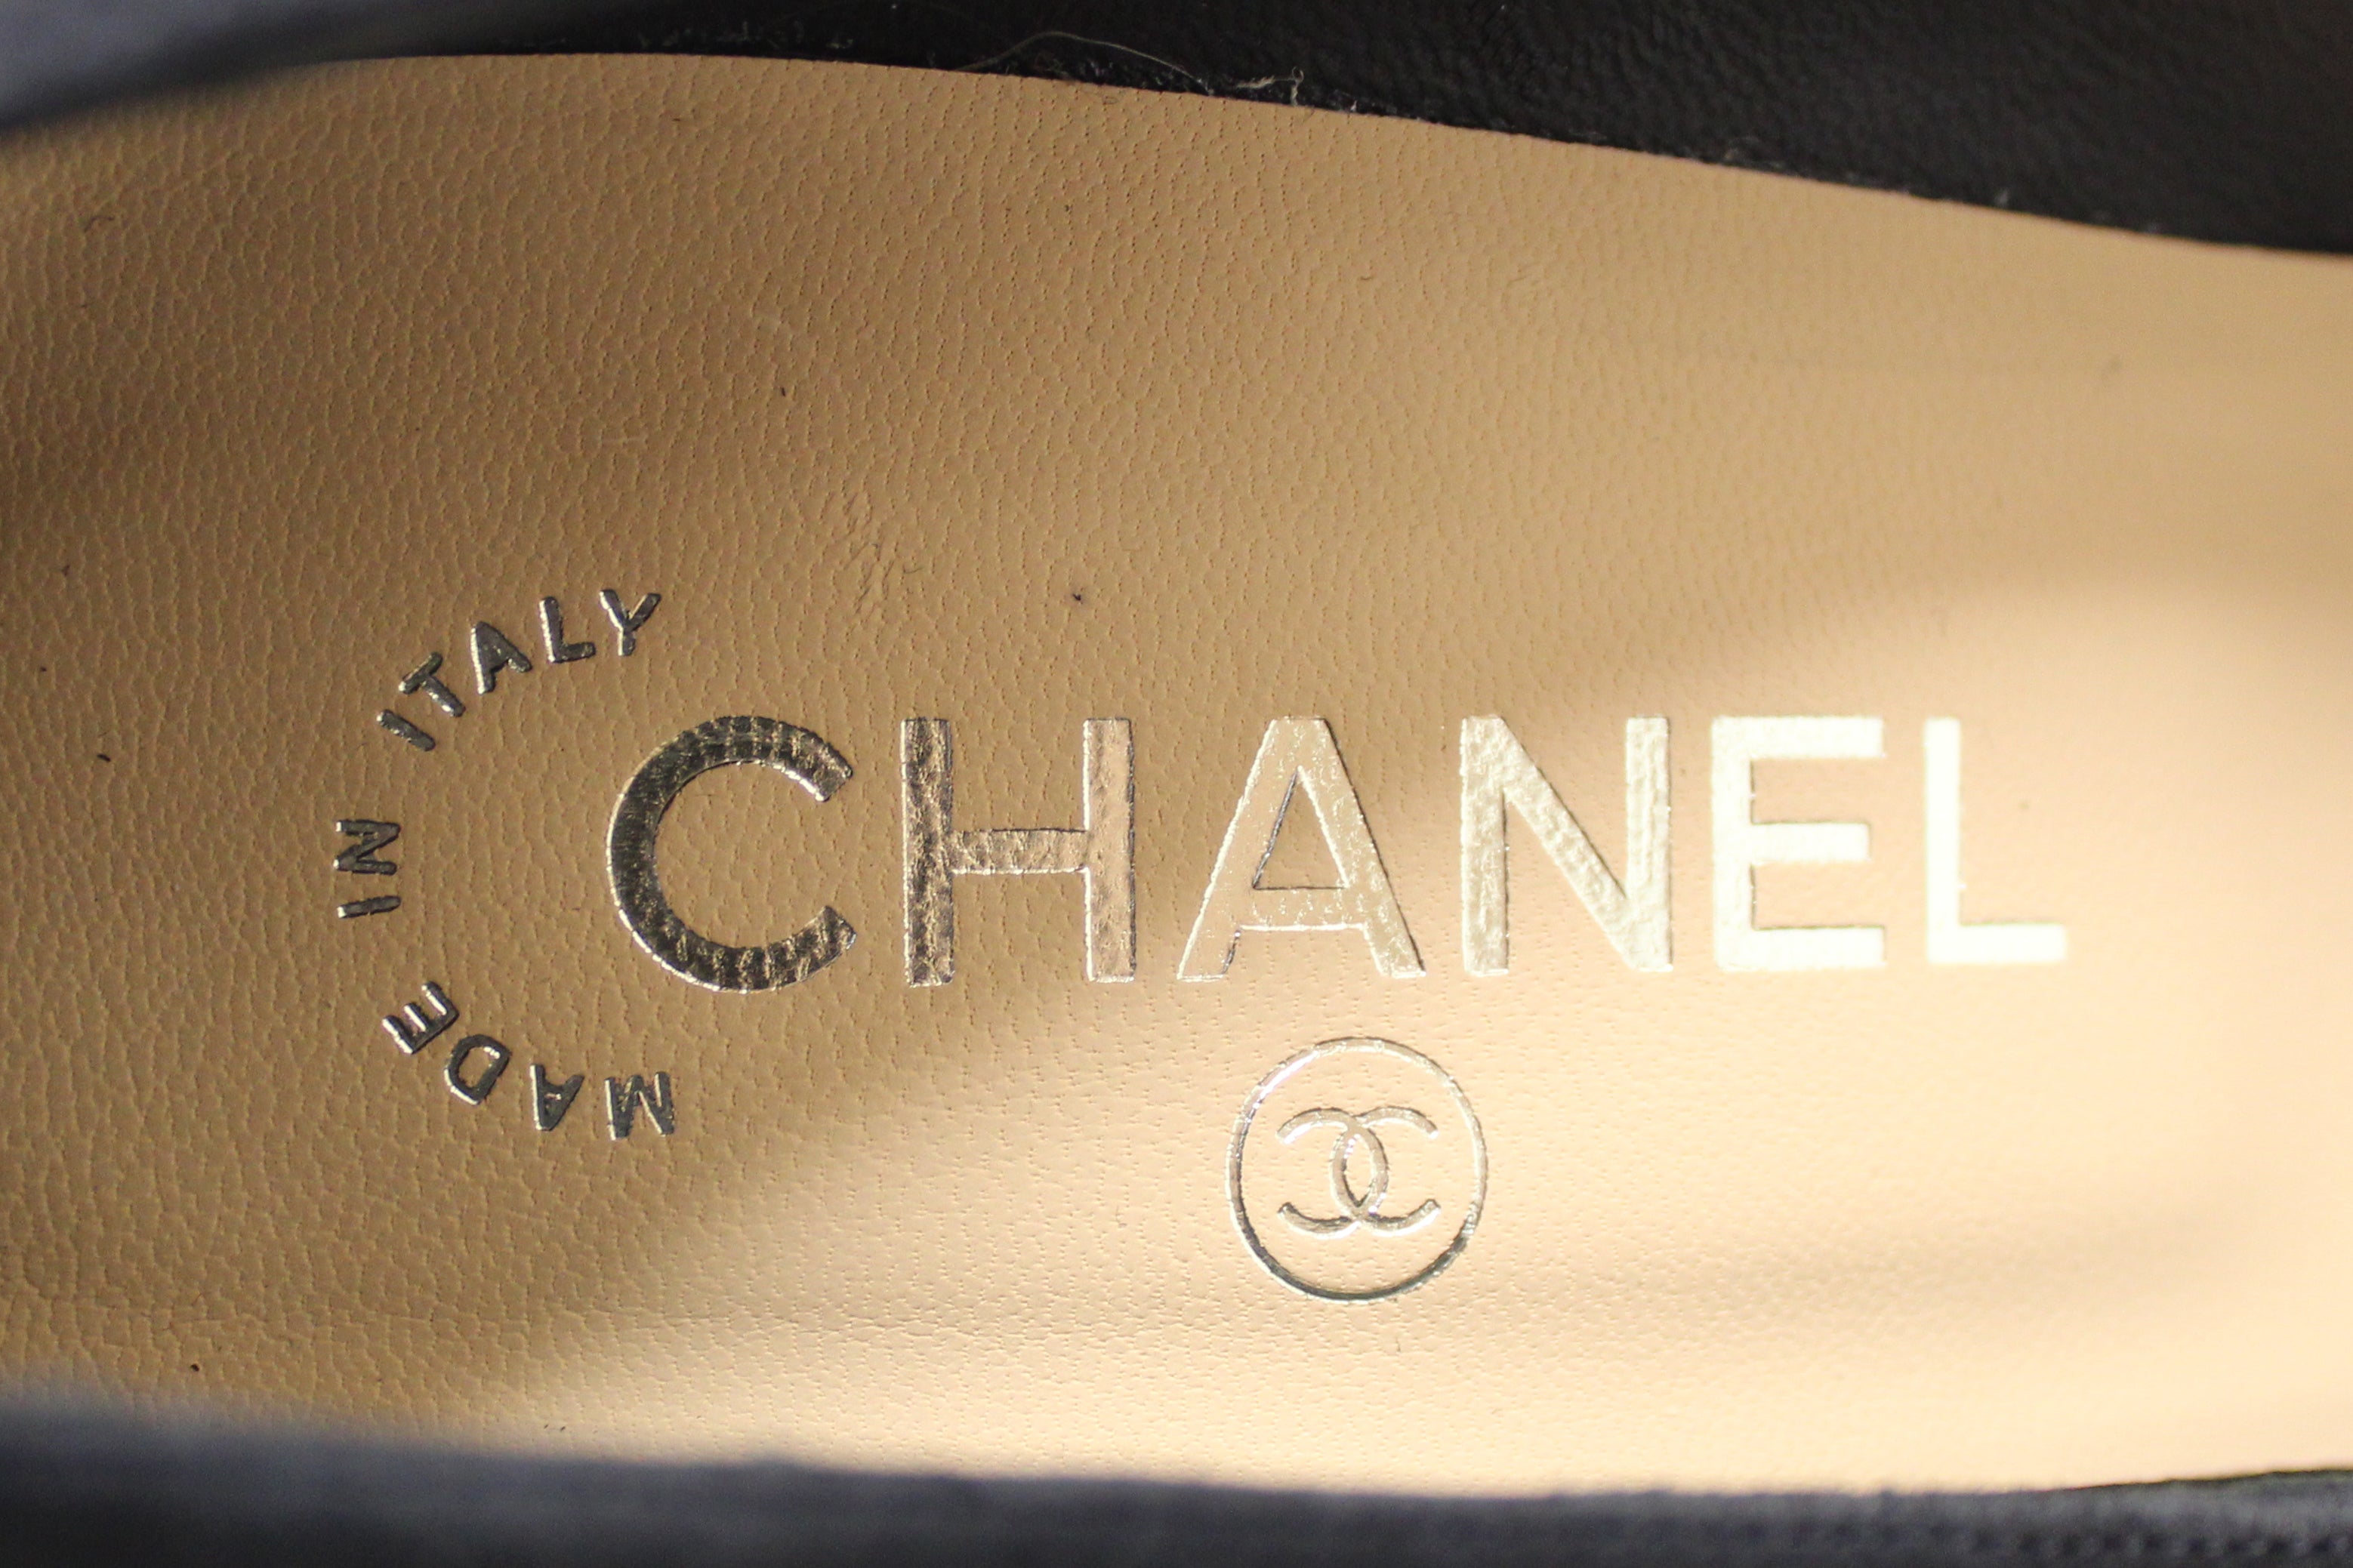 Authentic NEW Chanel Black/Navy Blue Suede Cap Toe Chain CC Pumps Size 40.5